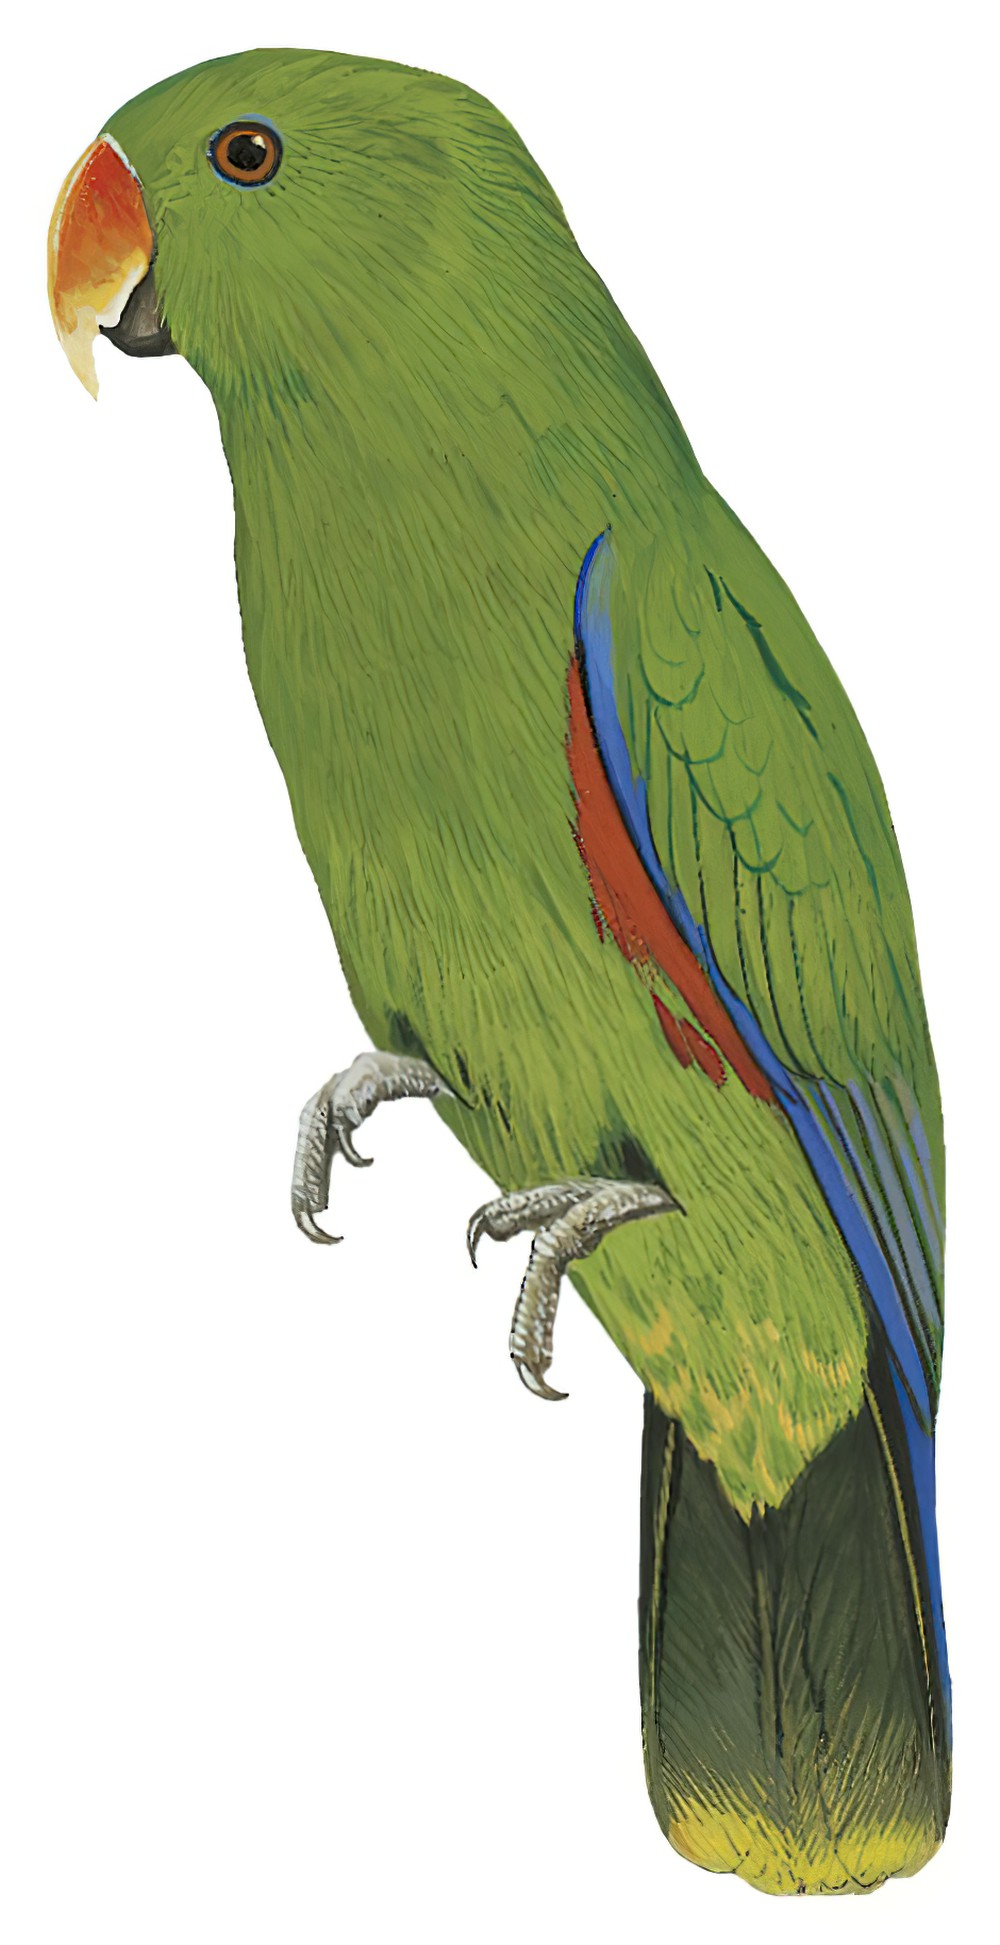 Eclectus Parrot / Eclectus roratus